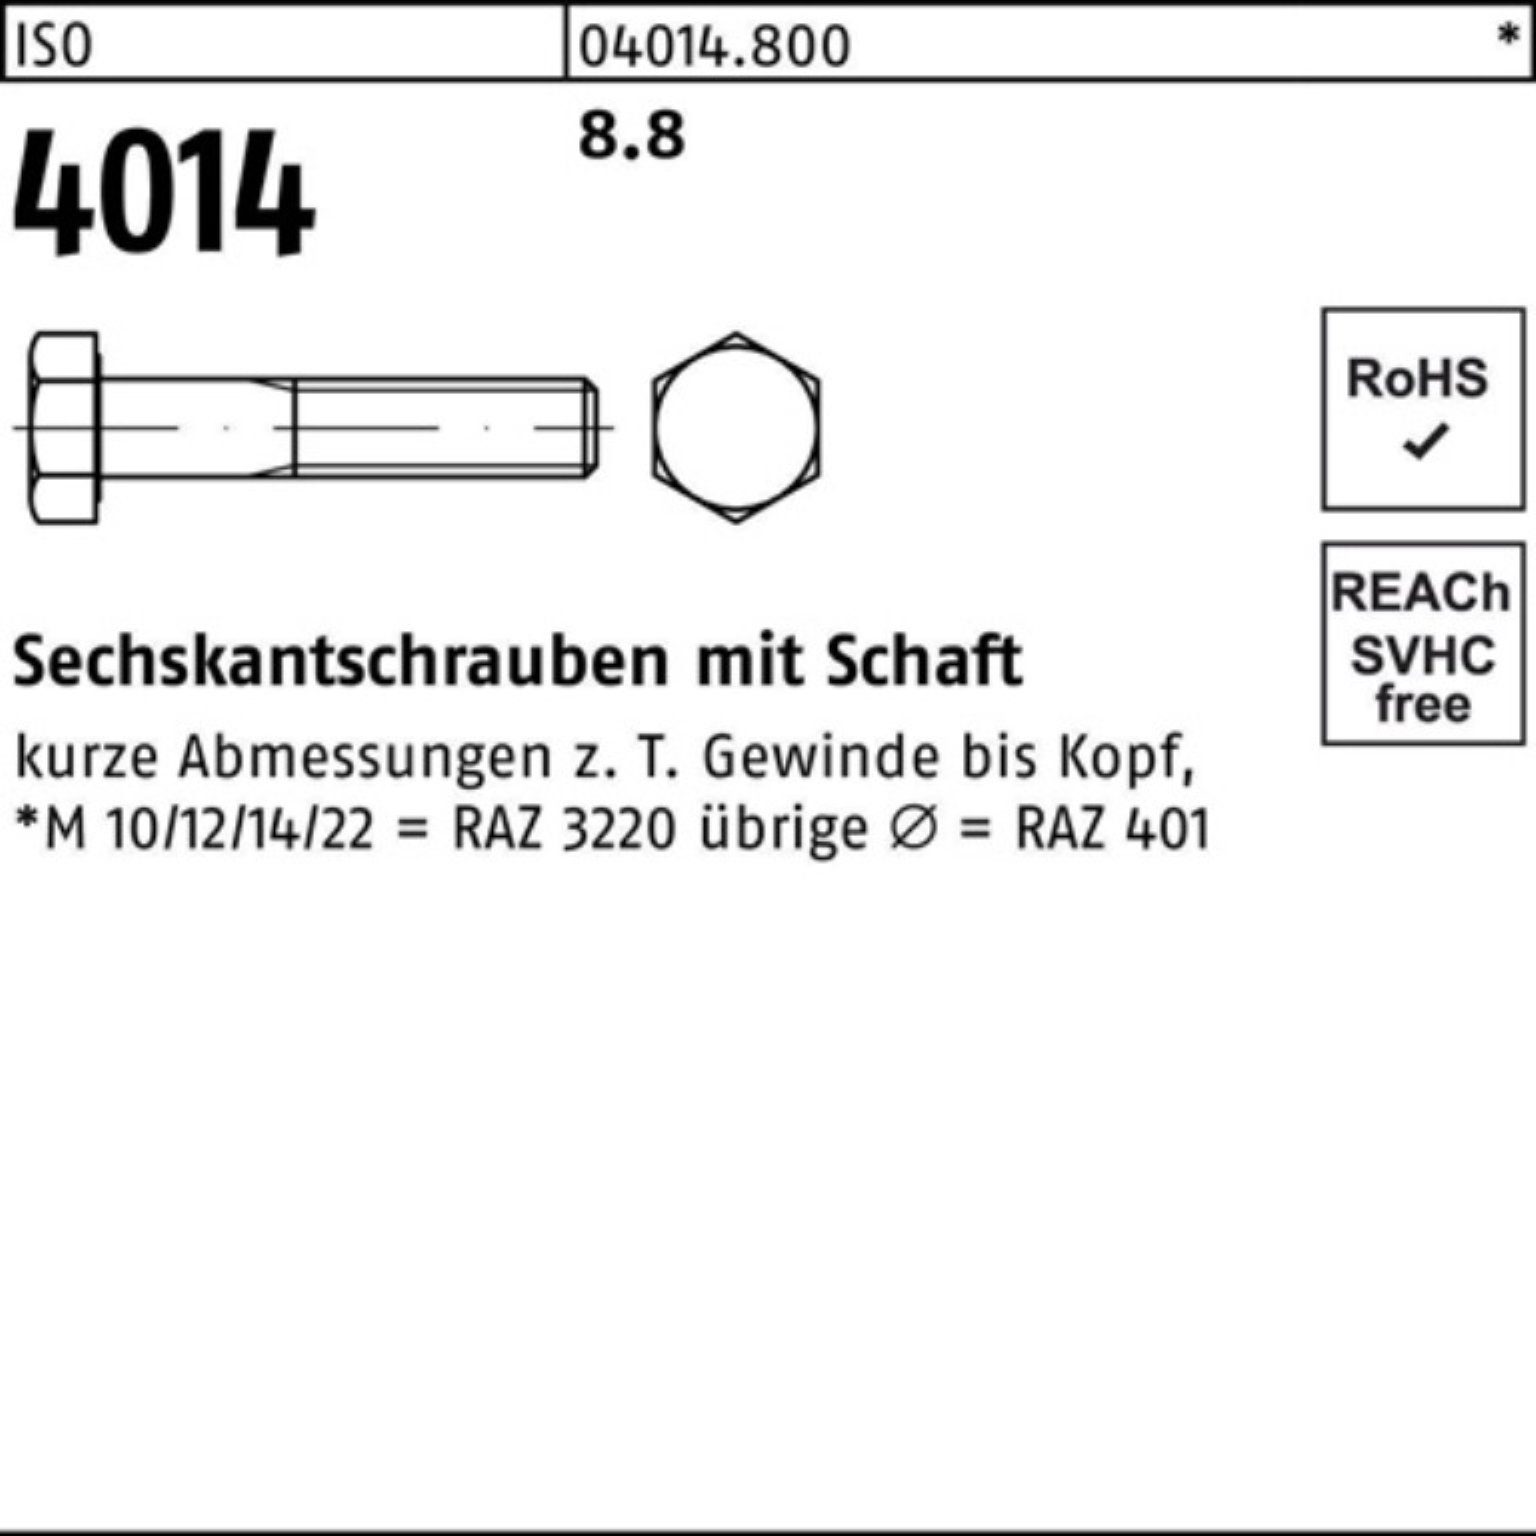 ISO IS Sechskantschraube 100er Sechskantschraube M6x Schaft 140 4014 Bufab 8.8 Pack Stück 100